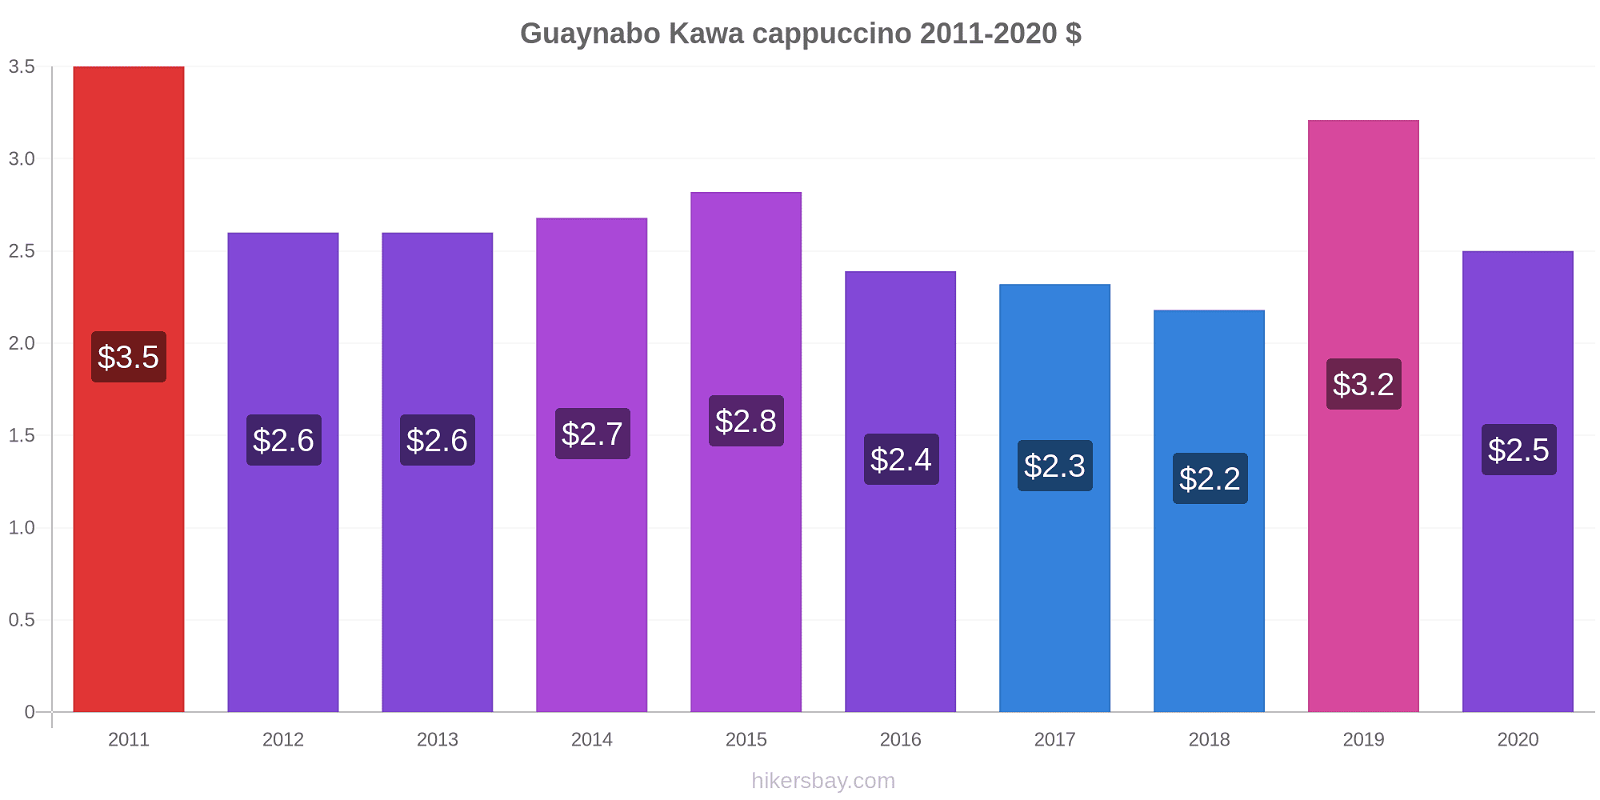 Guaynabo zmiany cen Kawa cappuccino hikersbay.com